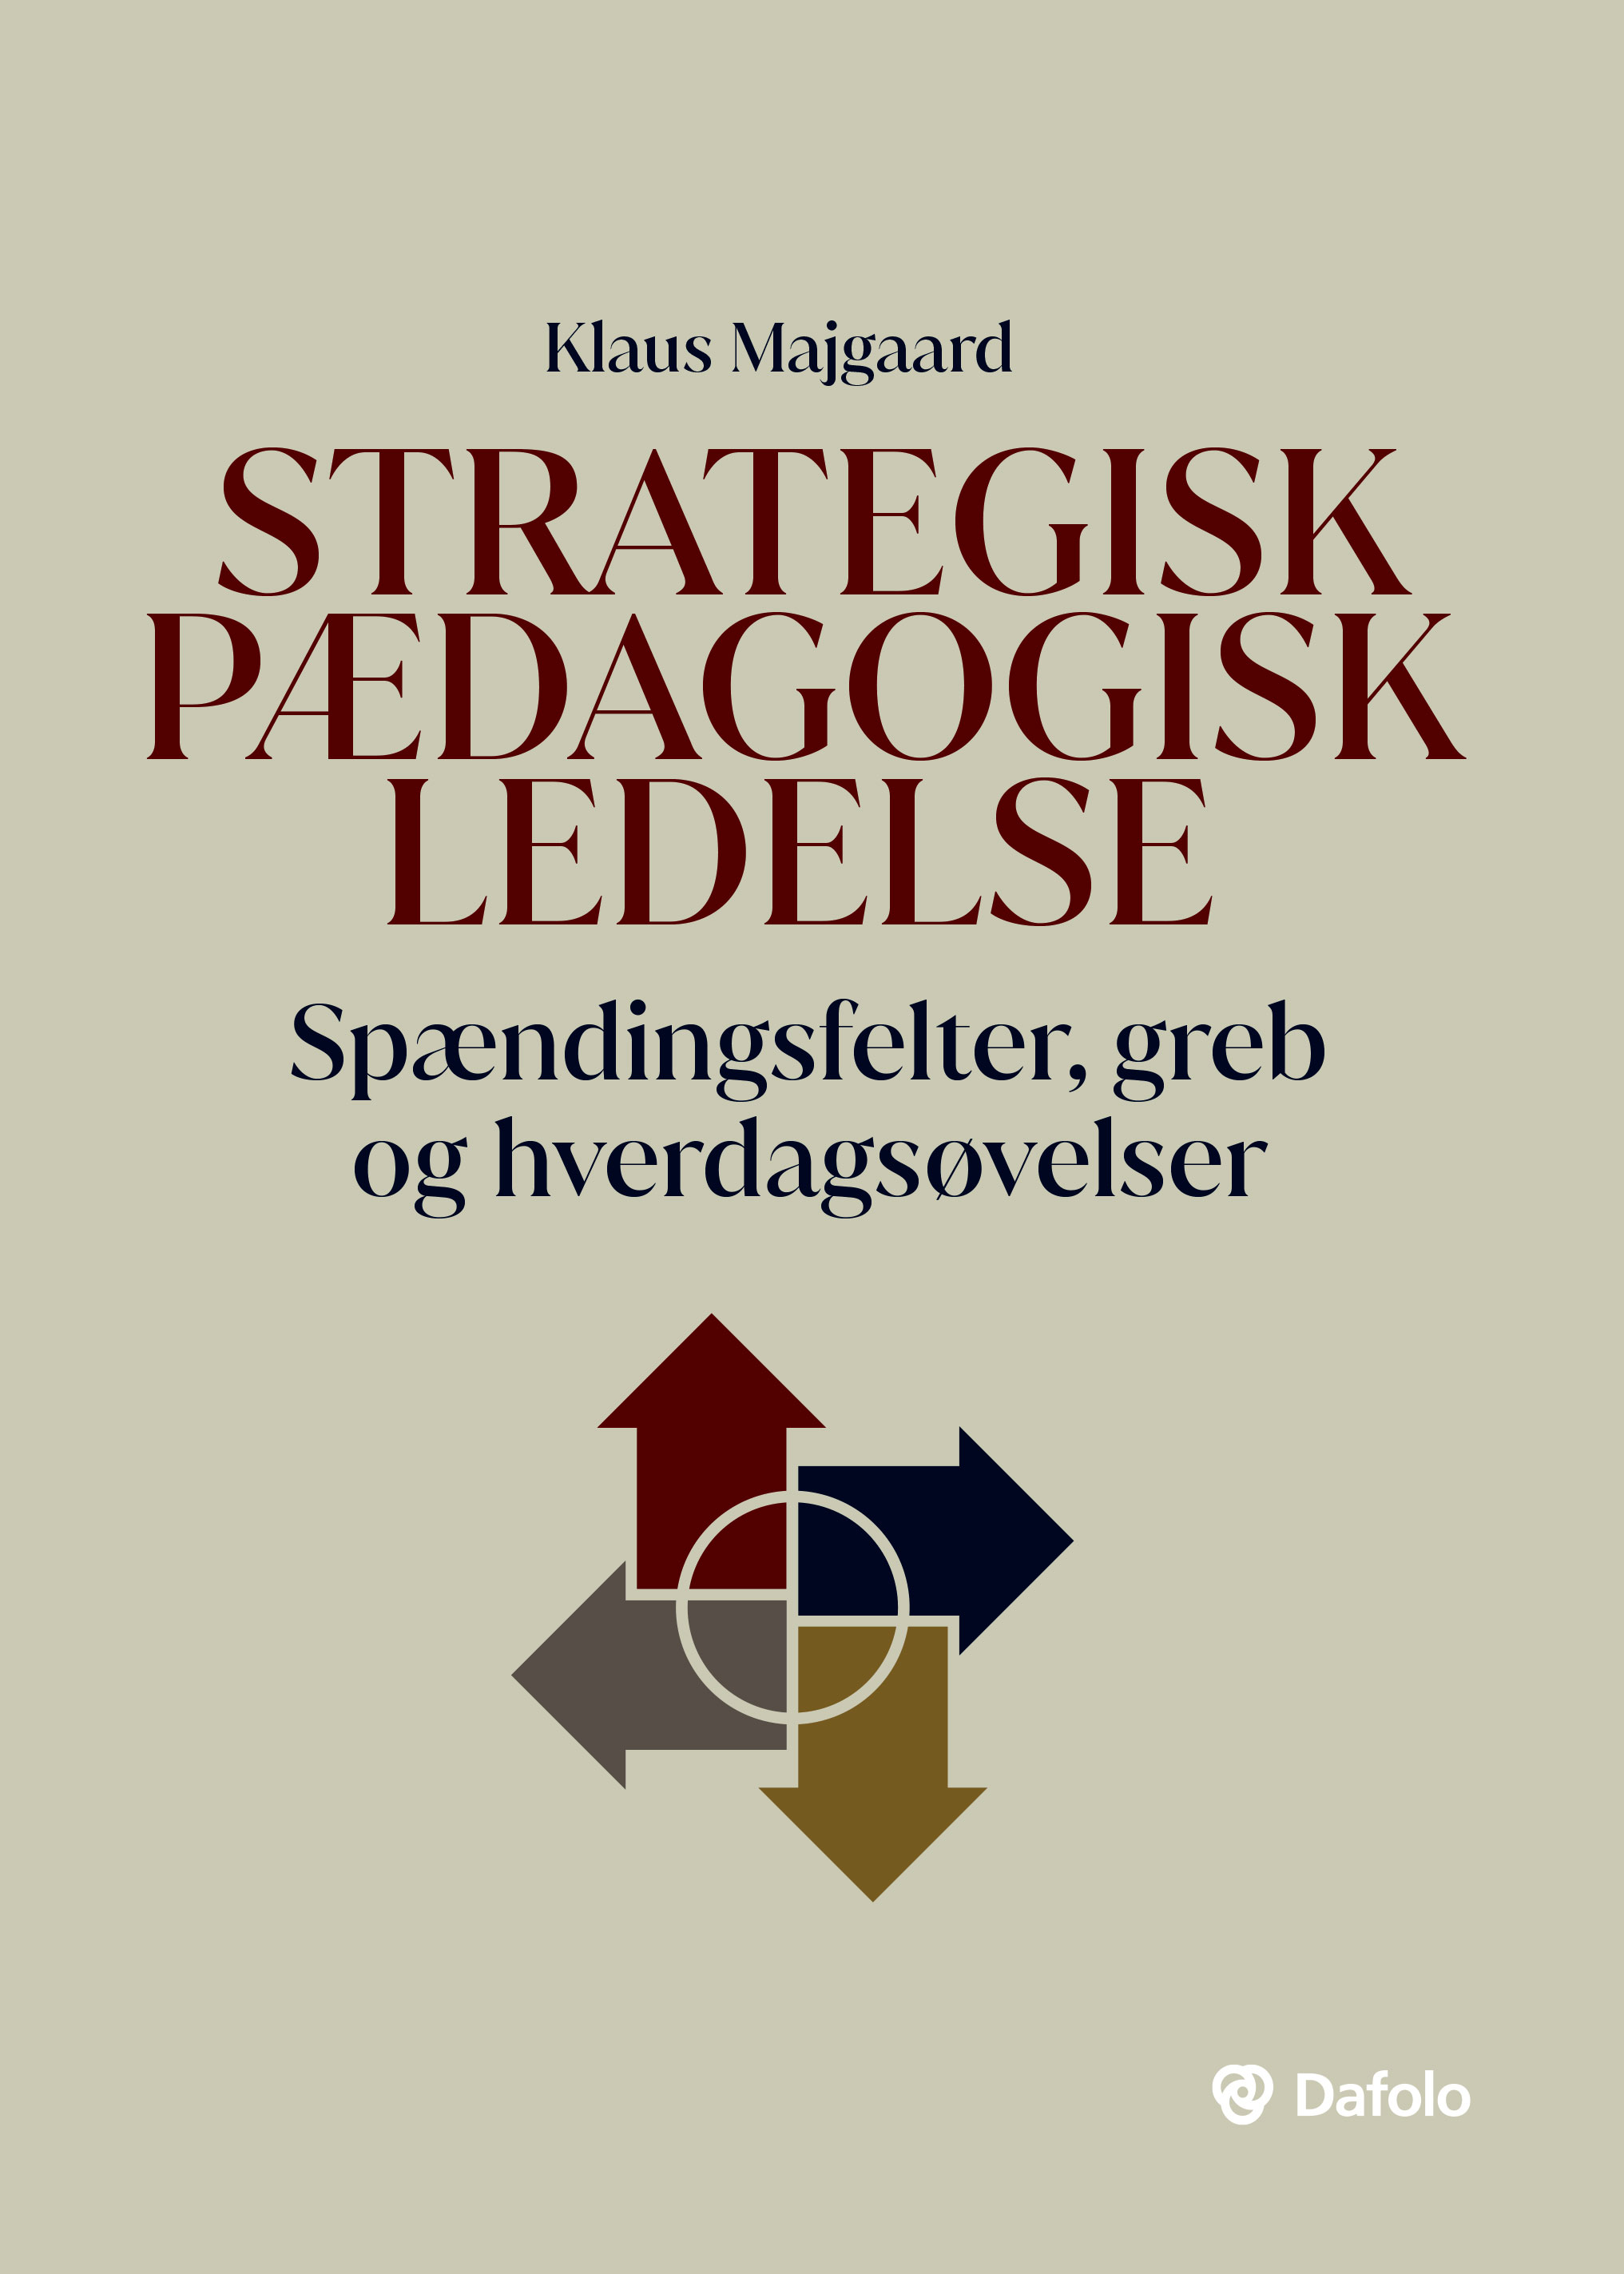 Strategisk pædagogisk ledelse - A/S